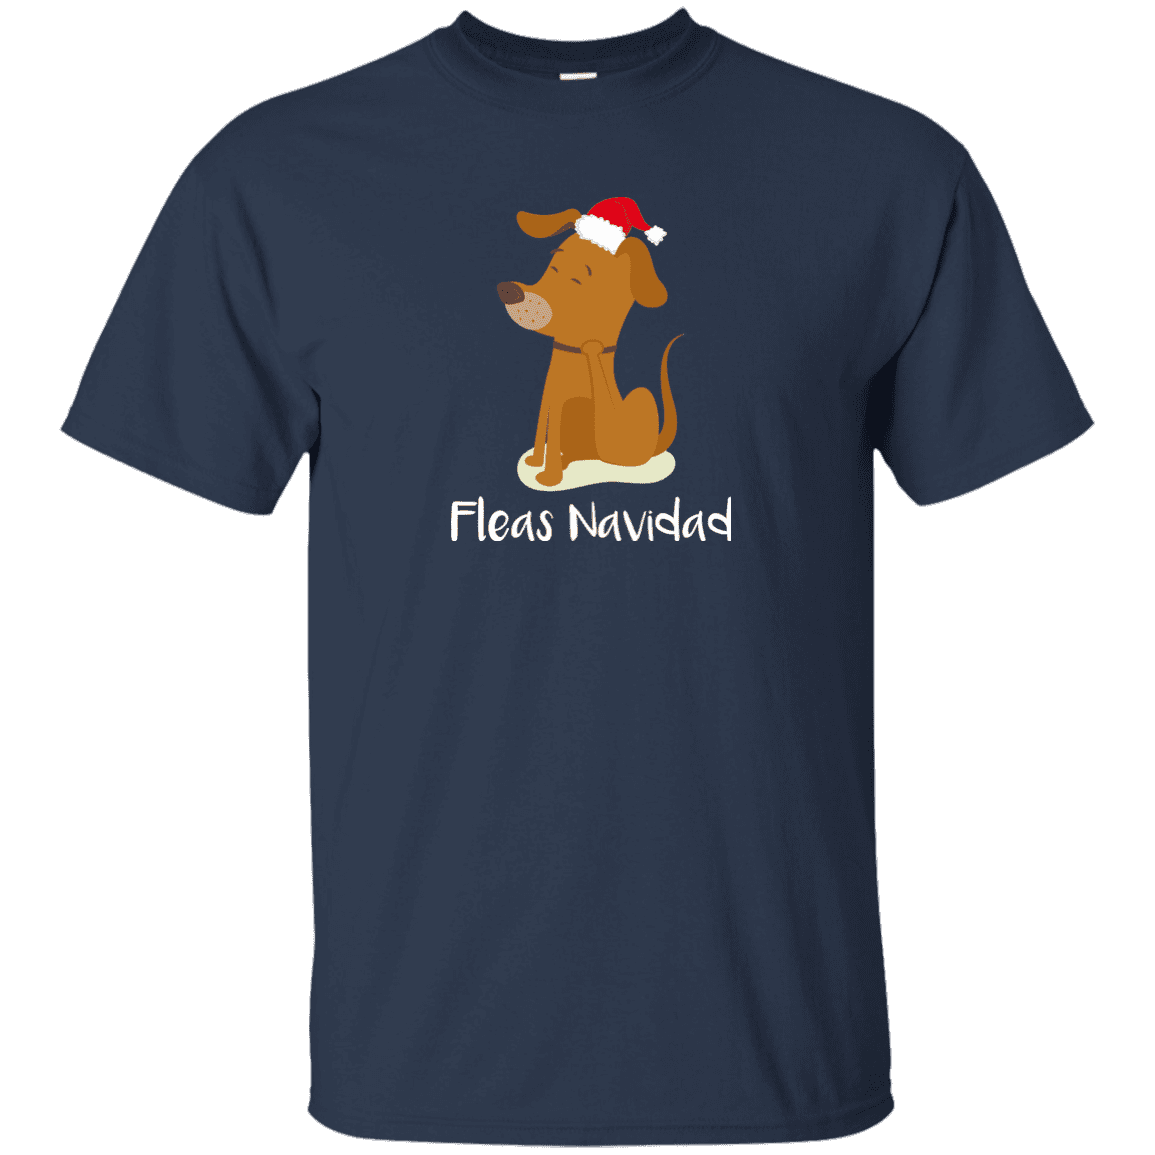 Fleas Navidad - T Shirt.